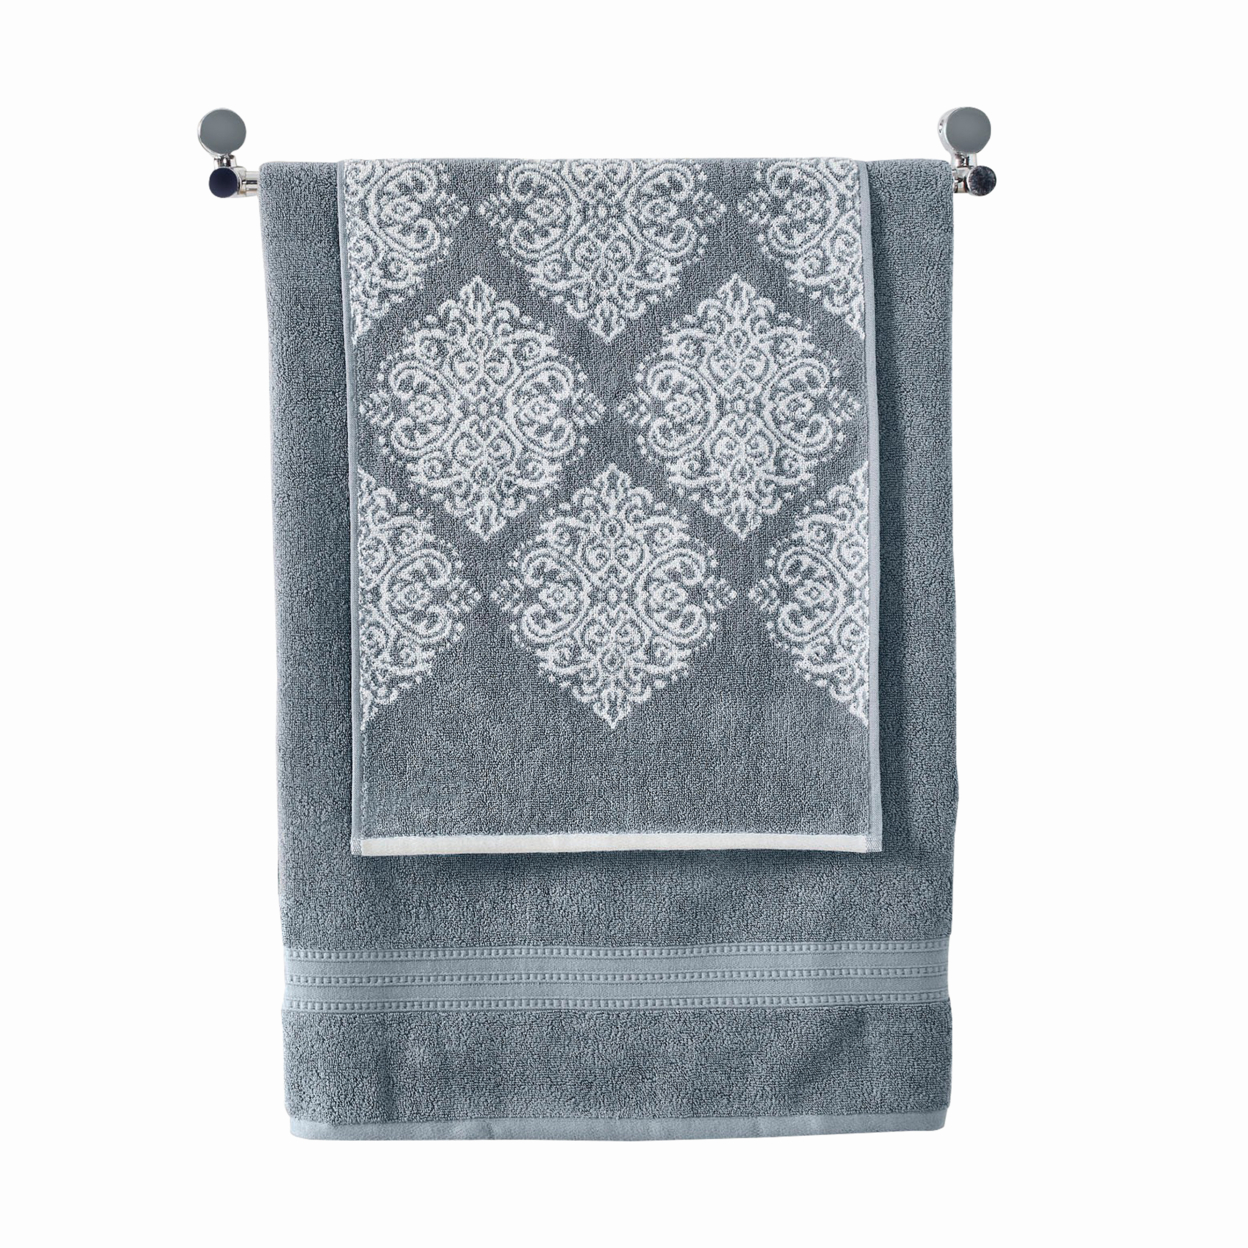 Eula Modern 6 Piece Cotton Towel Set, Stylish Damask Pattern, Slate Blue- Saltoro Sherpi